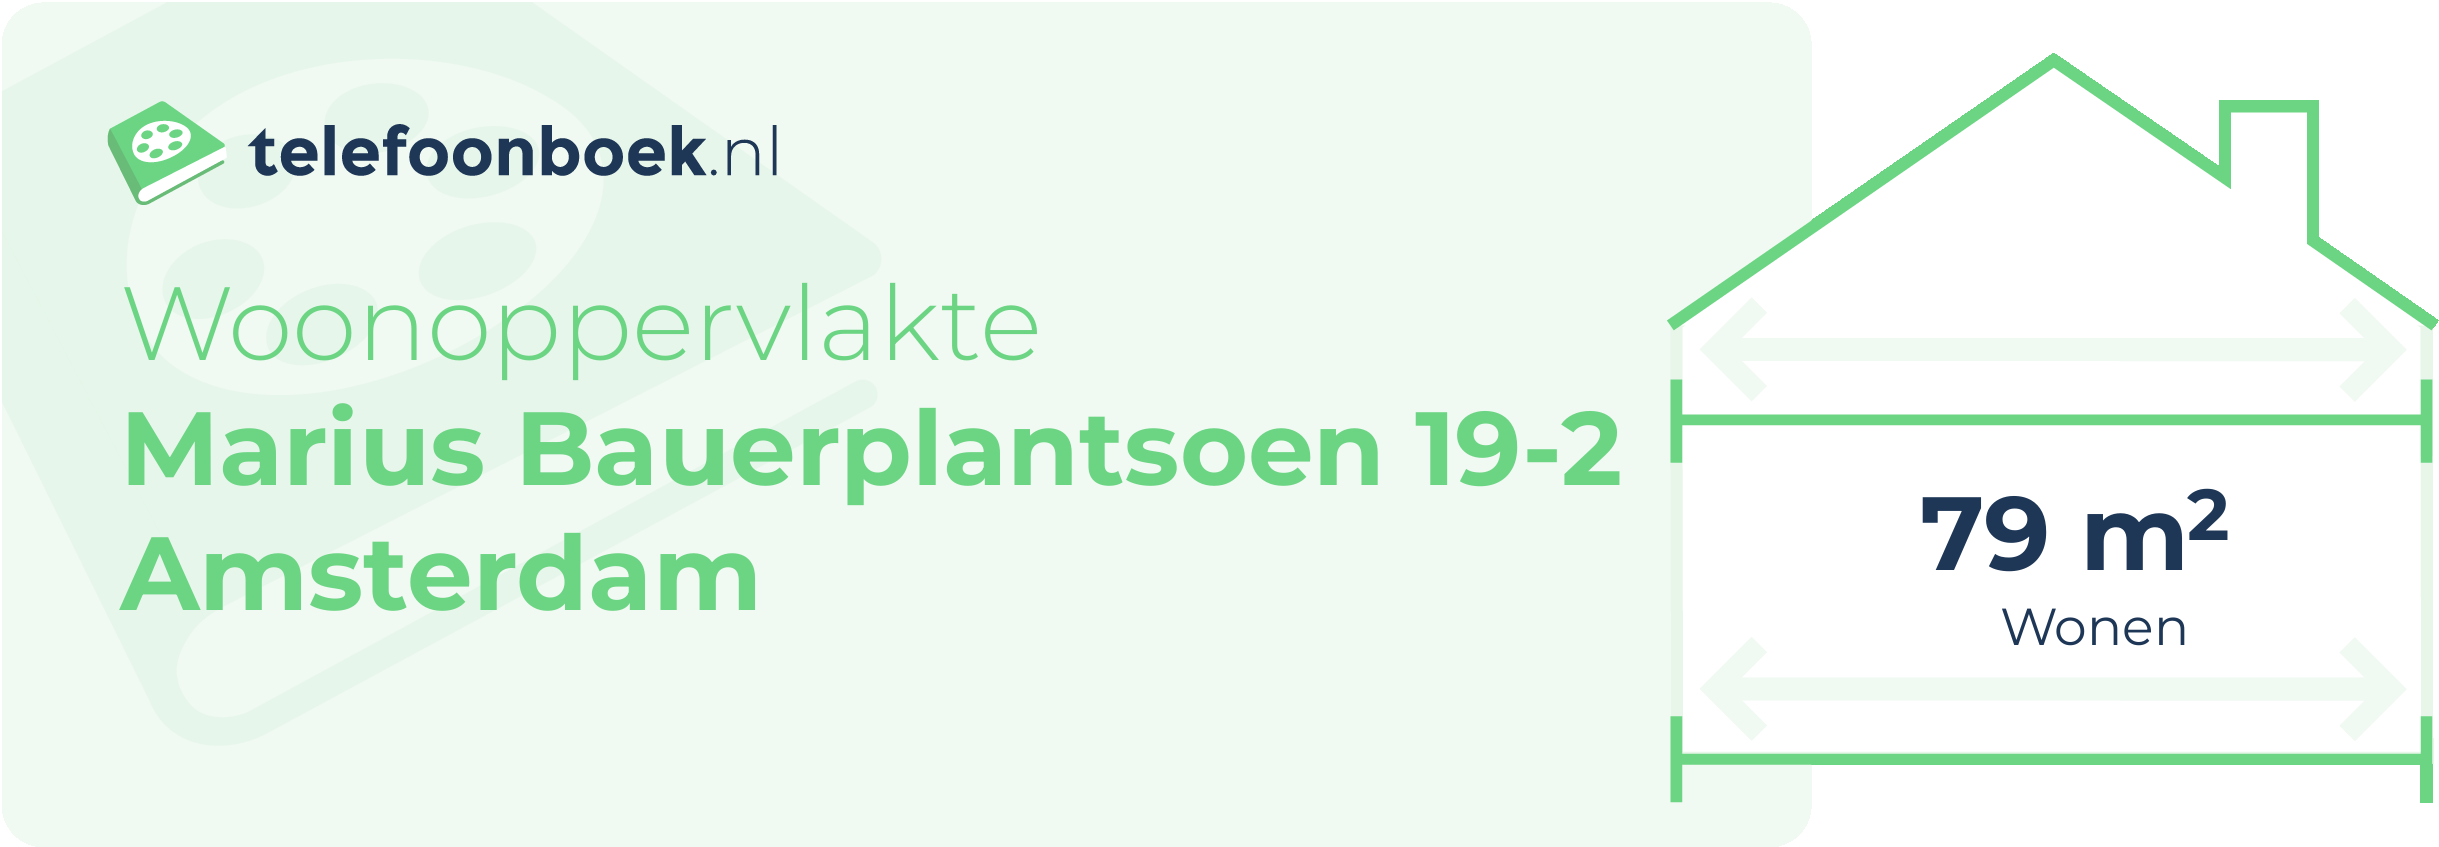 Woonoppervlakte Marius Bauerplantsoen 19-2 Amsterdam